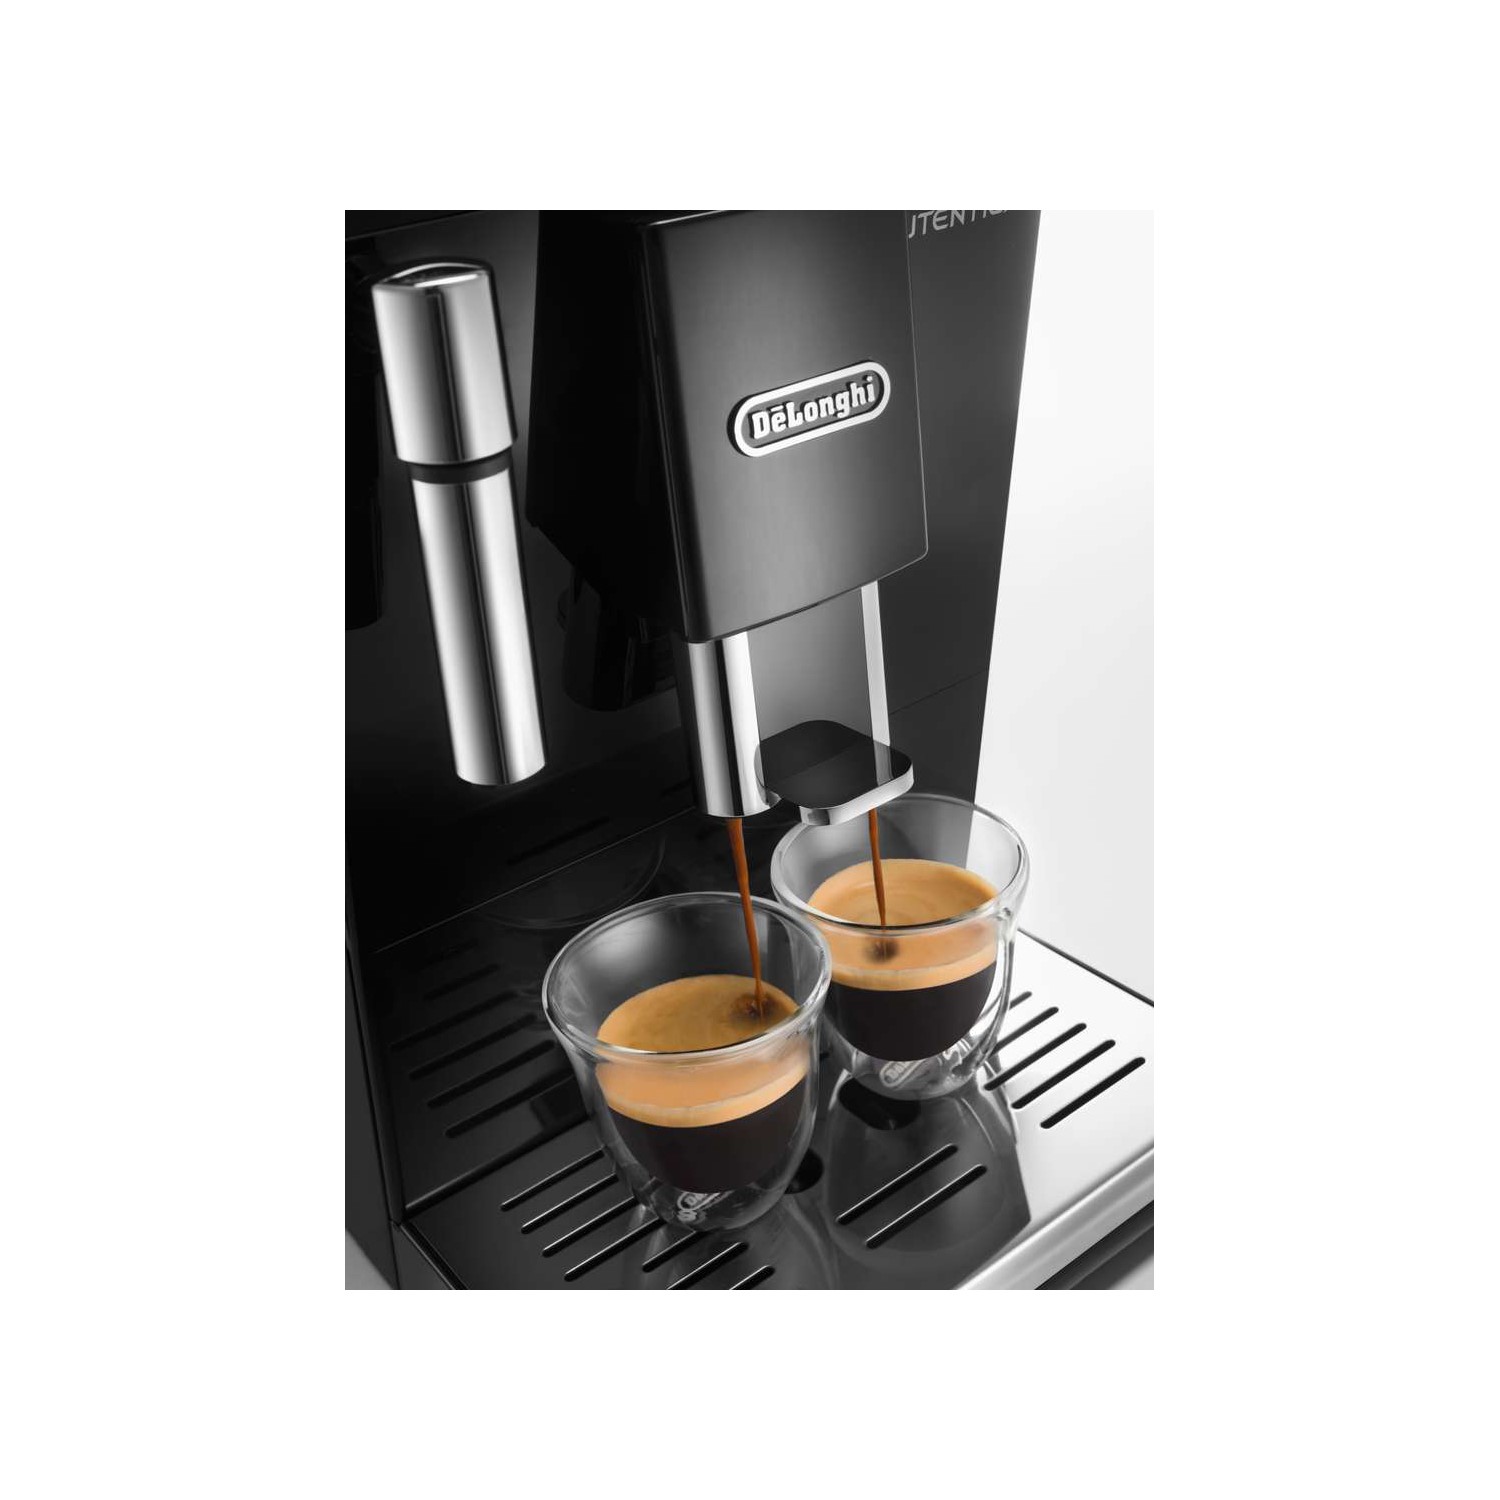 The DeLonghi Autentica ETAM B super-automatic coffee maker: the